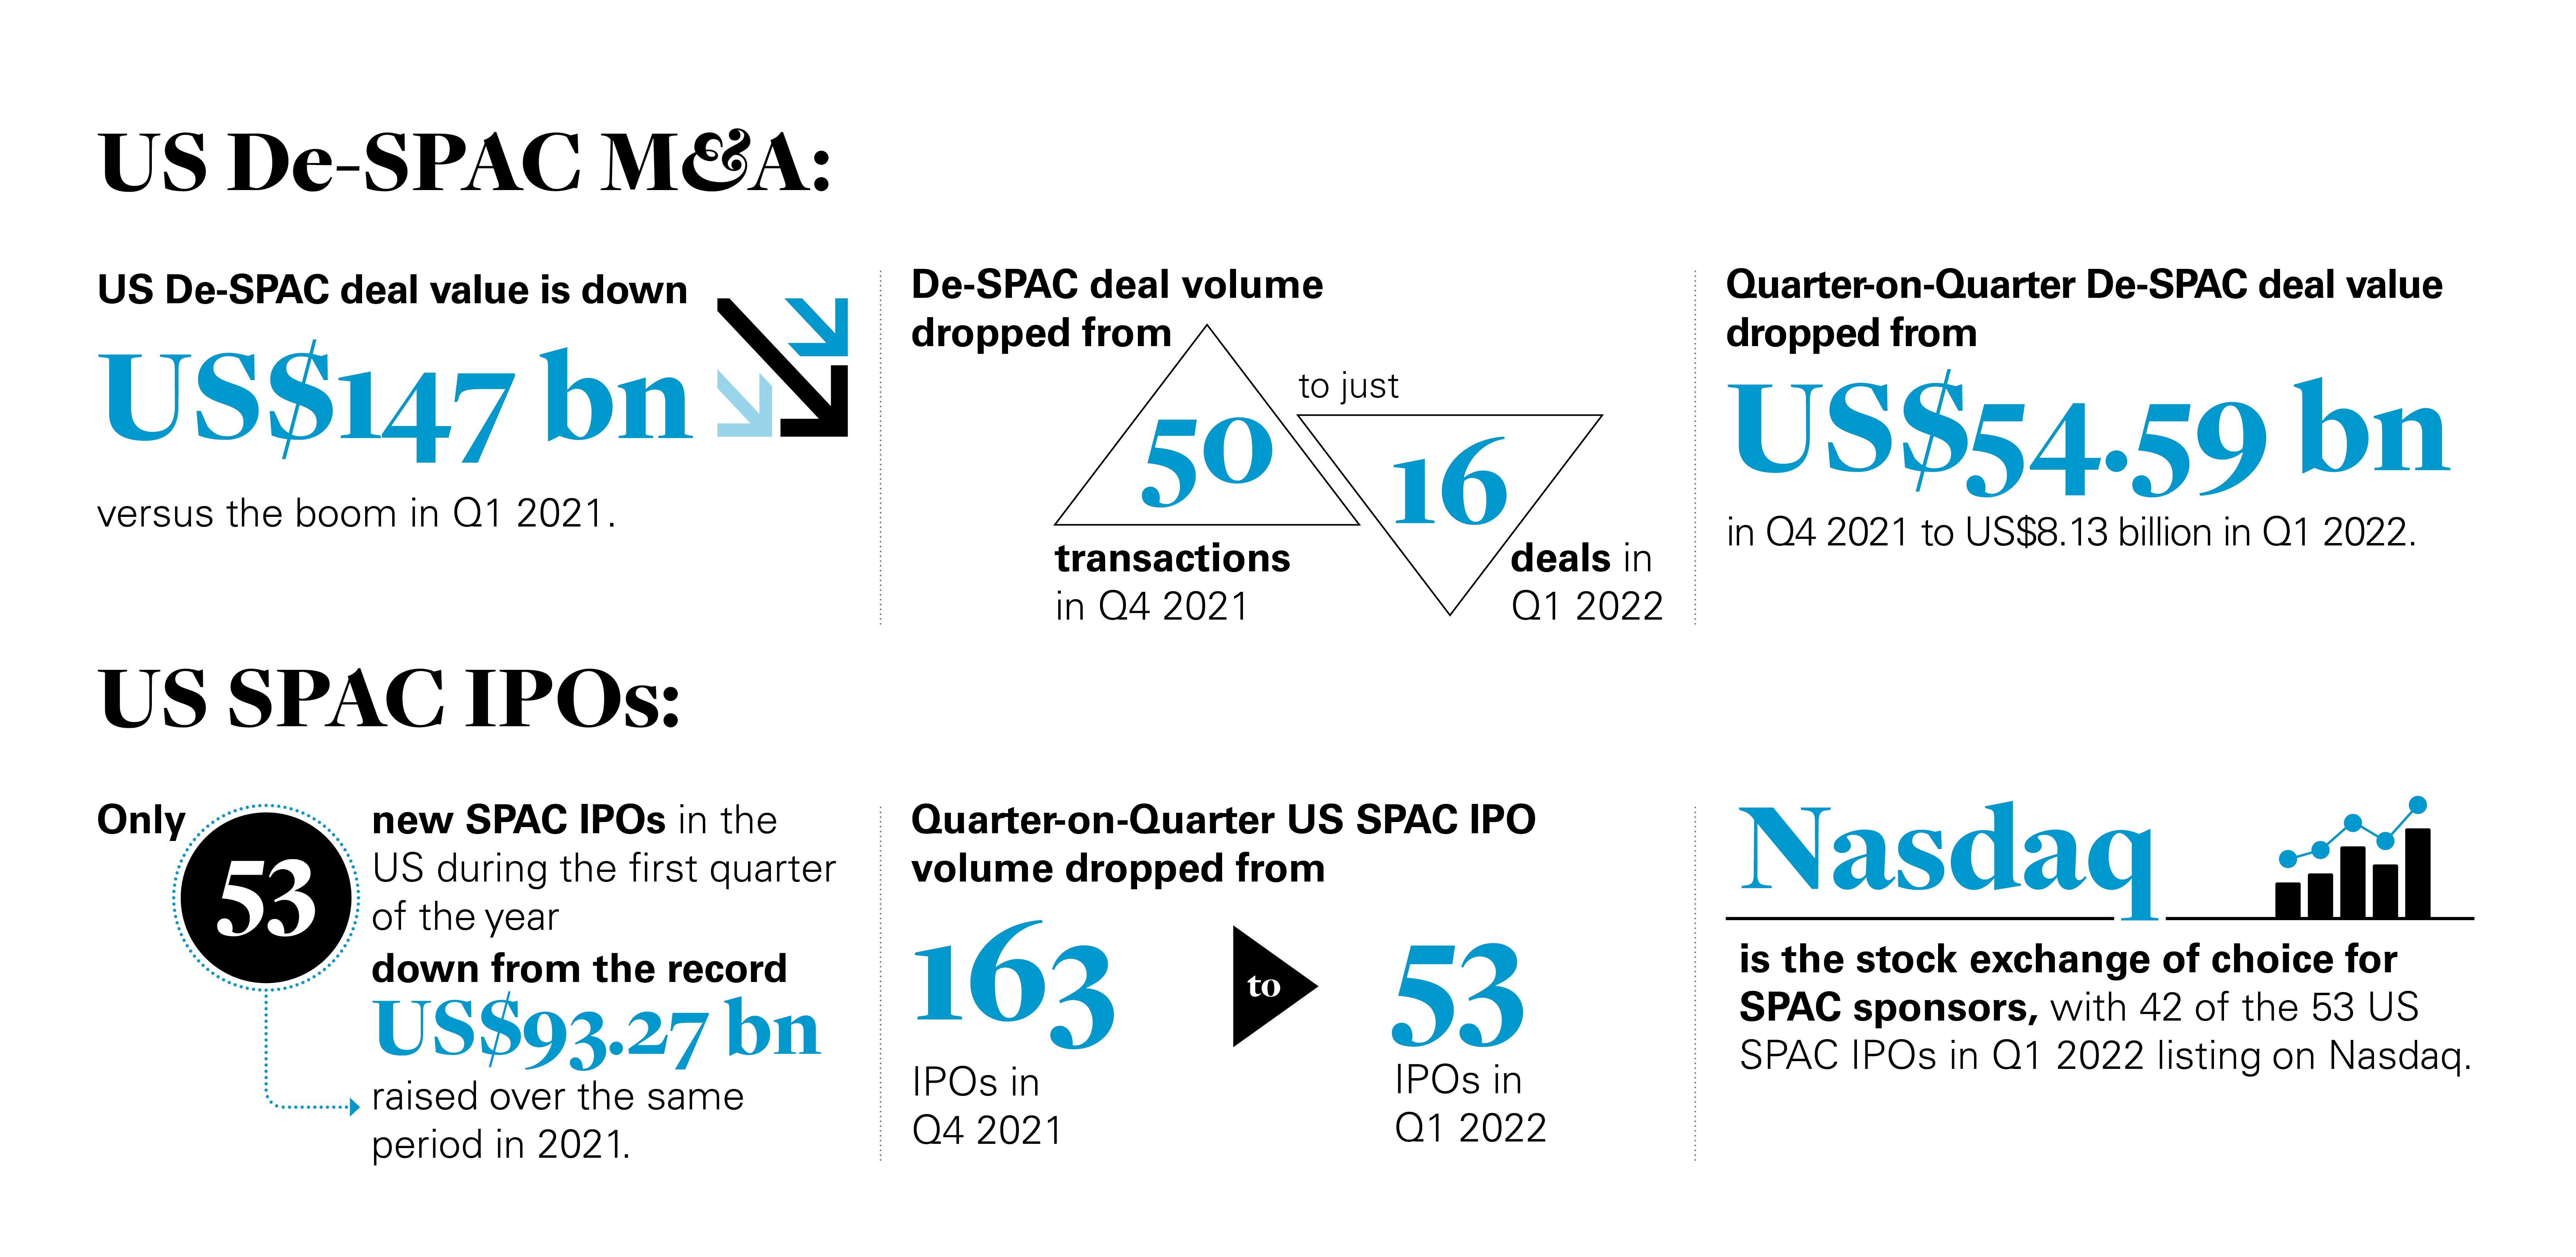 US De-SPAC & SPAC data & statistics roundup